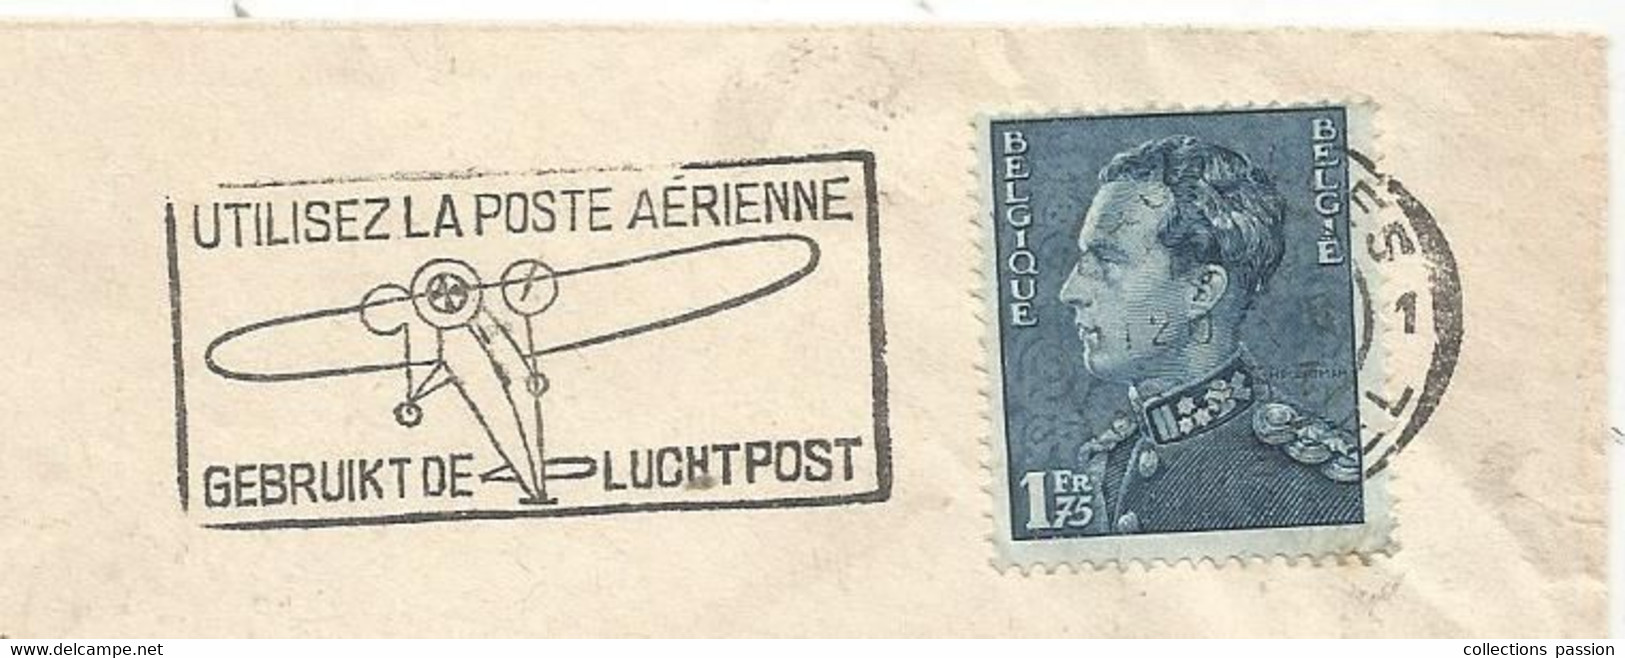 Lettre, BELGIQUE , FLAMME : Utilisez La Poste Aerienne , Gebruikt De Luchtpost , 1937, 3 Scans, Orléans LOIRET - Sellados Mecánicos